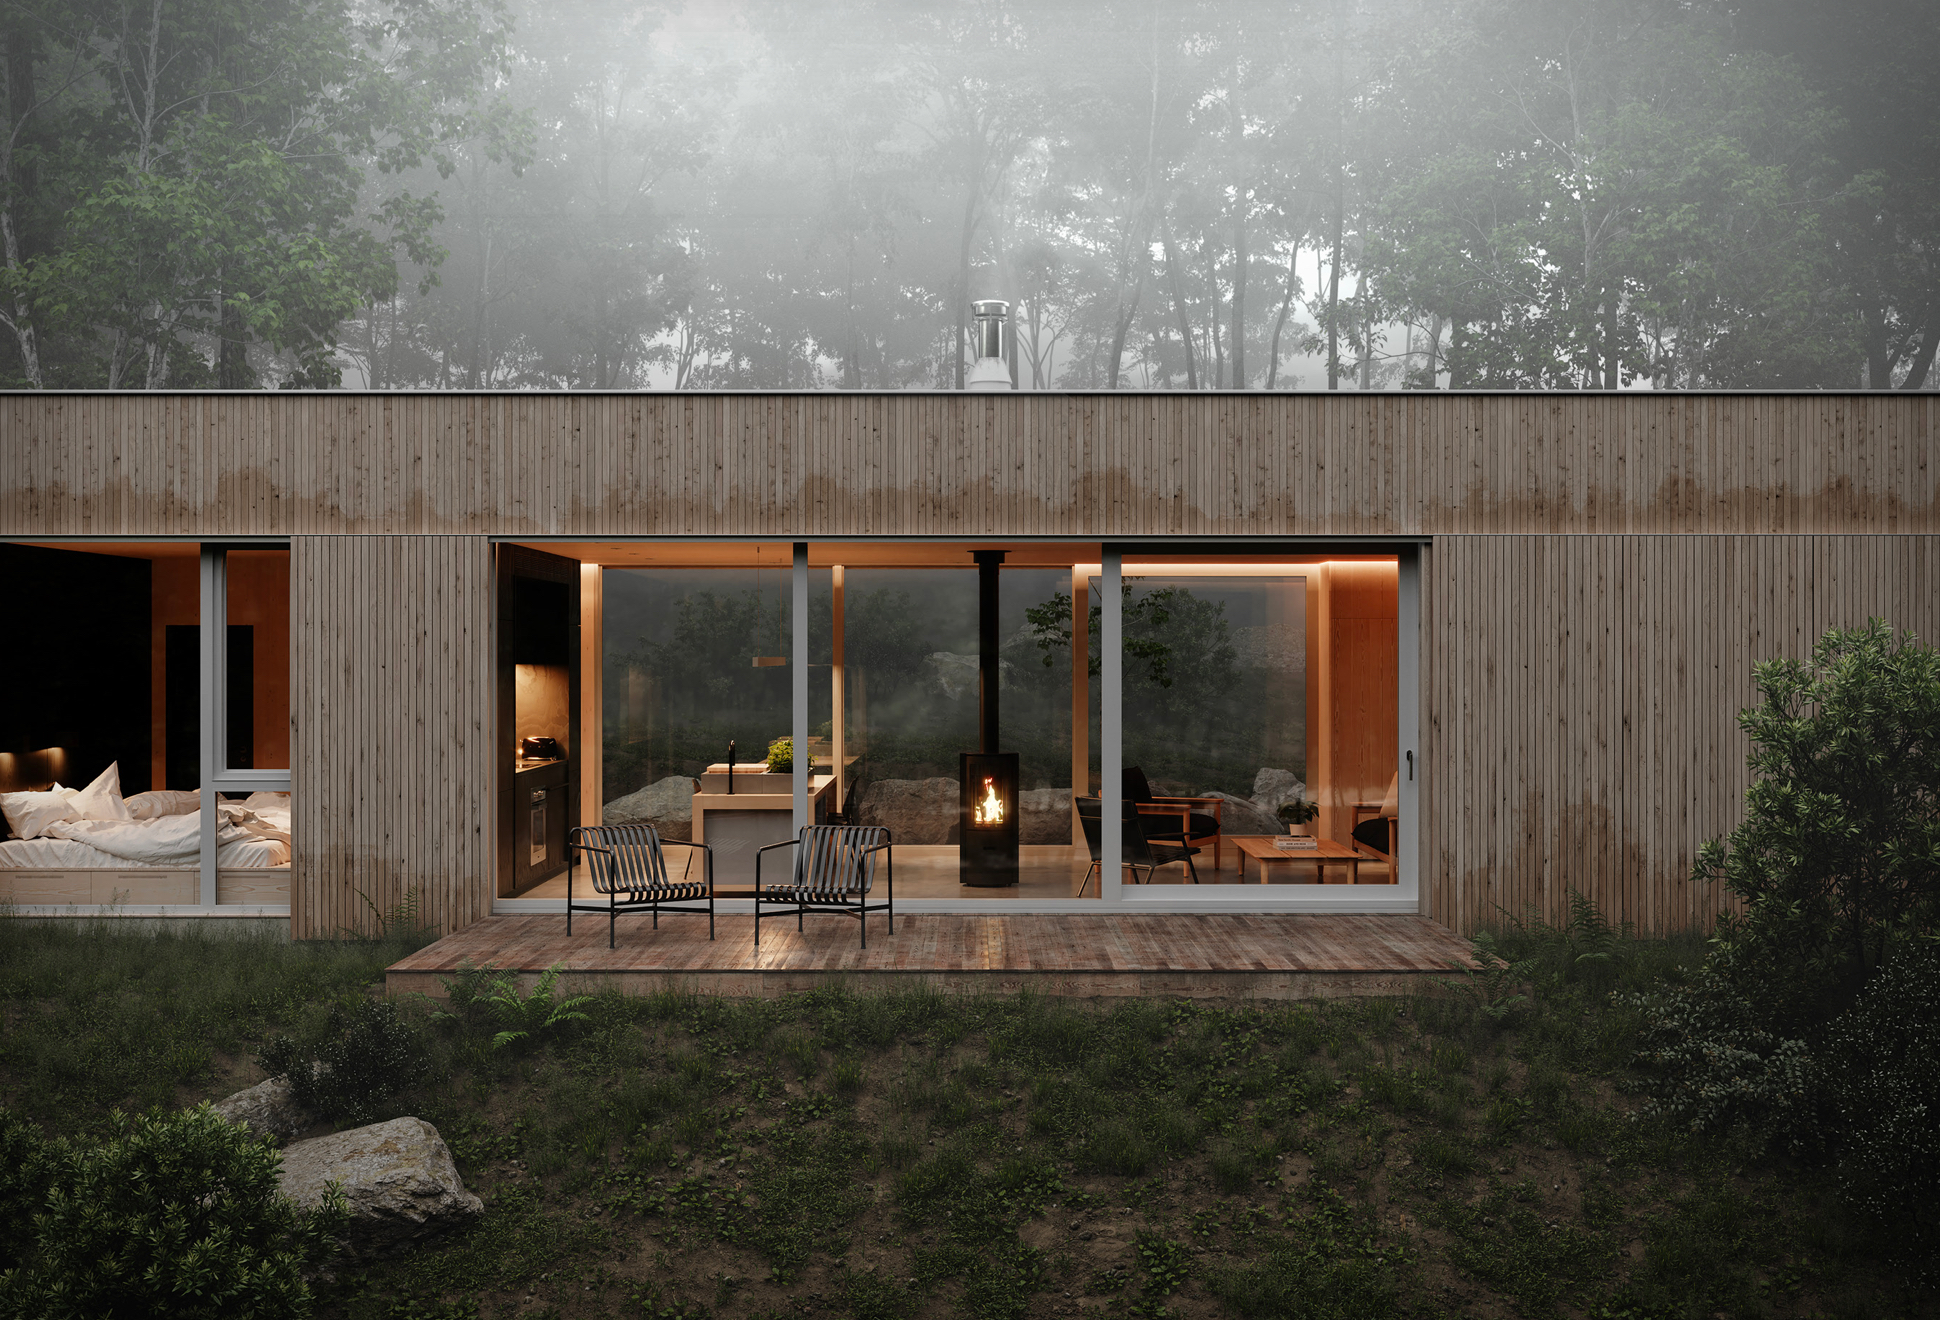 Hinterhouse: A Casa De Campo Moderna No Meio Da Natureza - Image